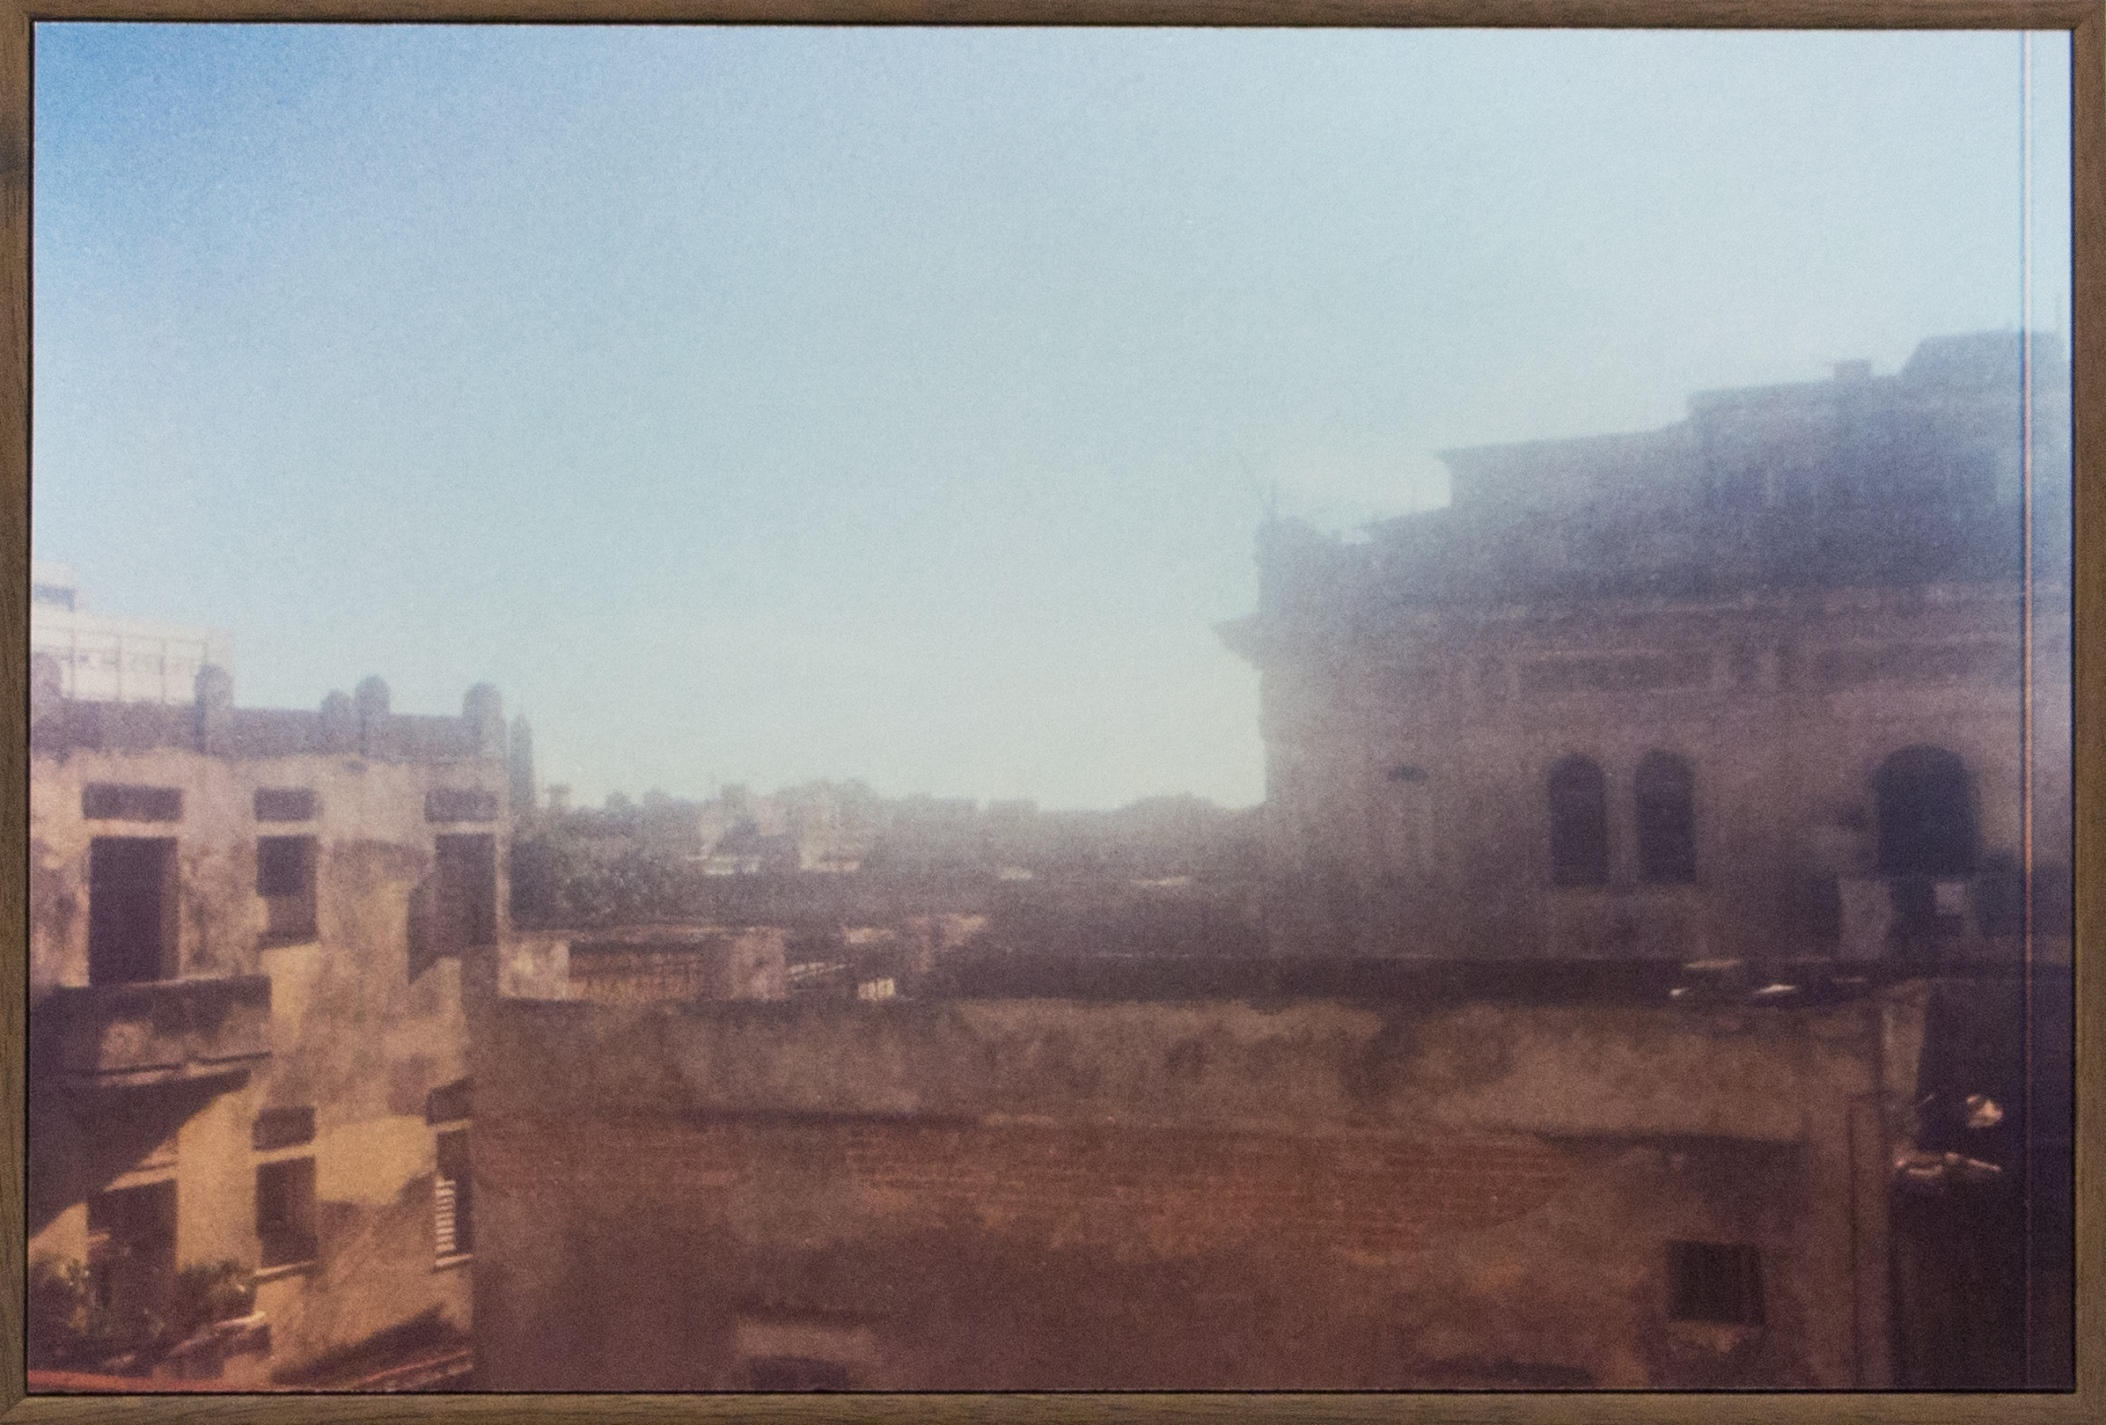 Modo Paisagem #7 La Habana, 2015. Fotografia analógica, 30x20cm cada.